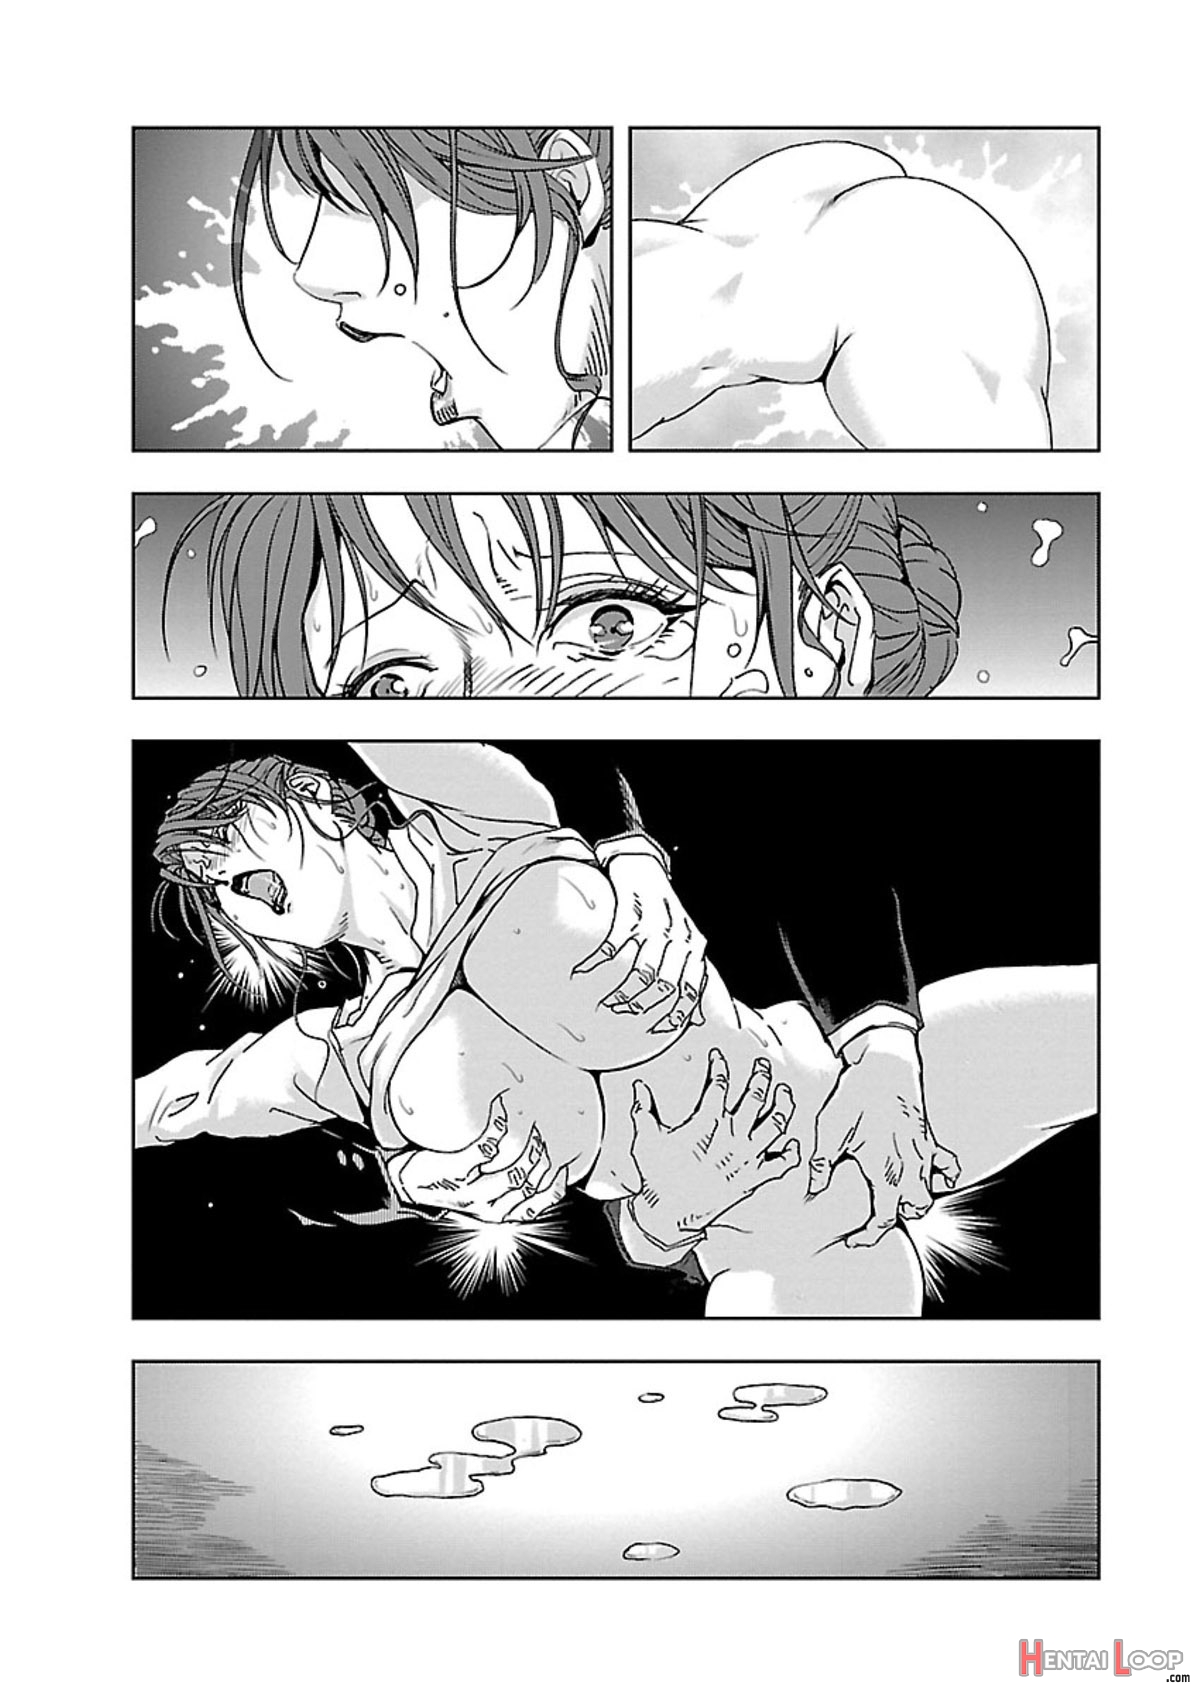 Nikuhisyo Yukiko Volume I Ch. 1-6 page 136